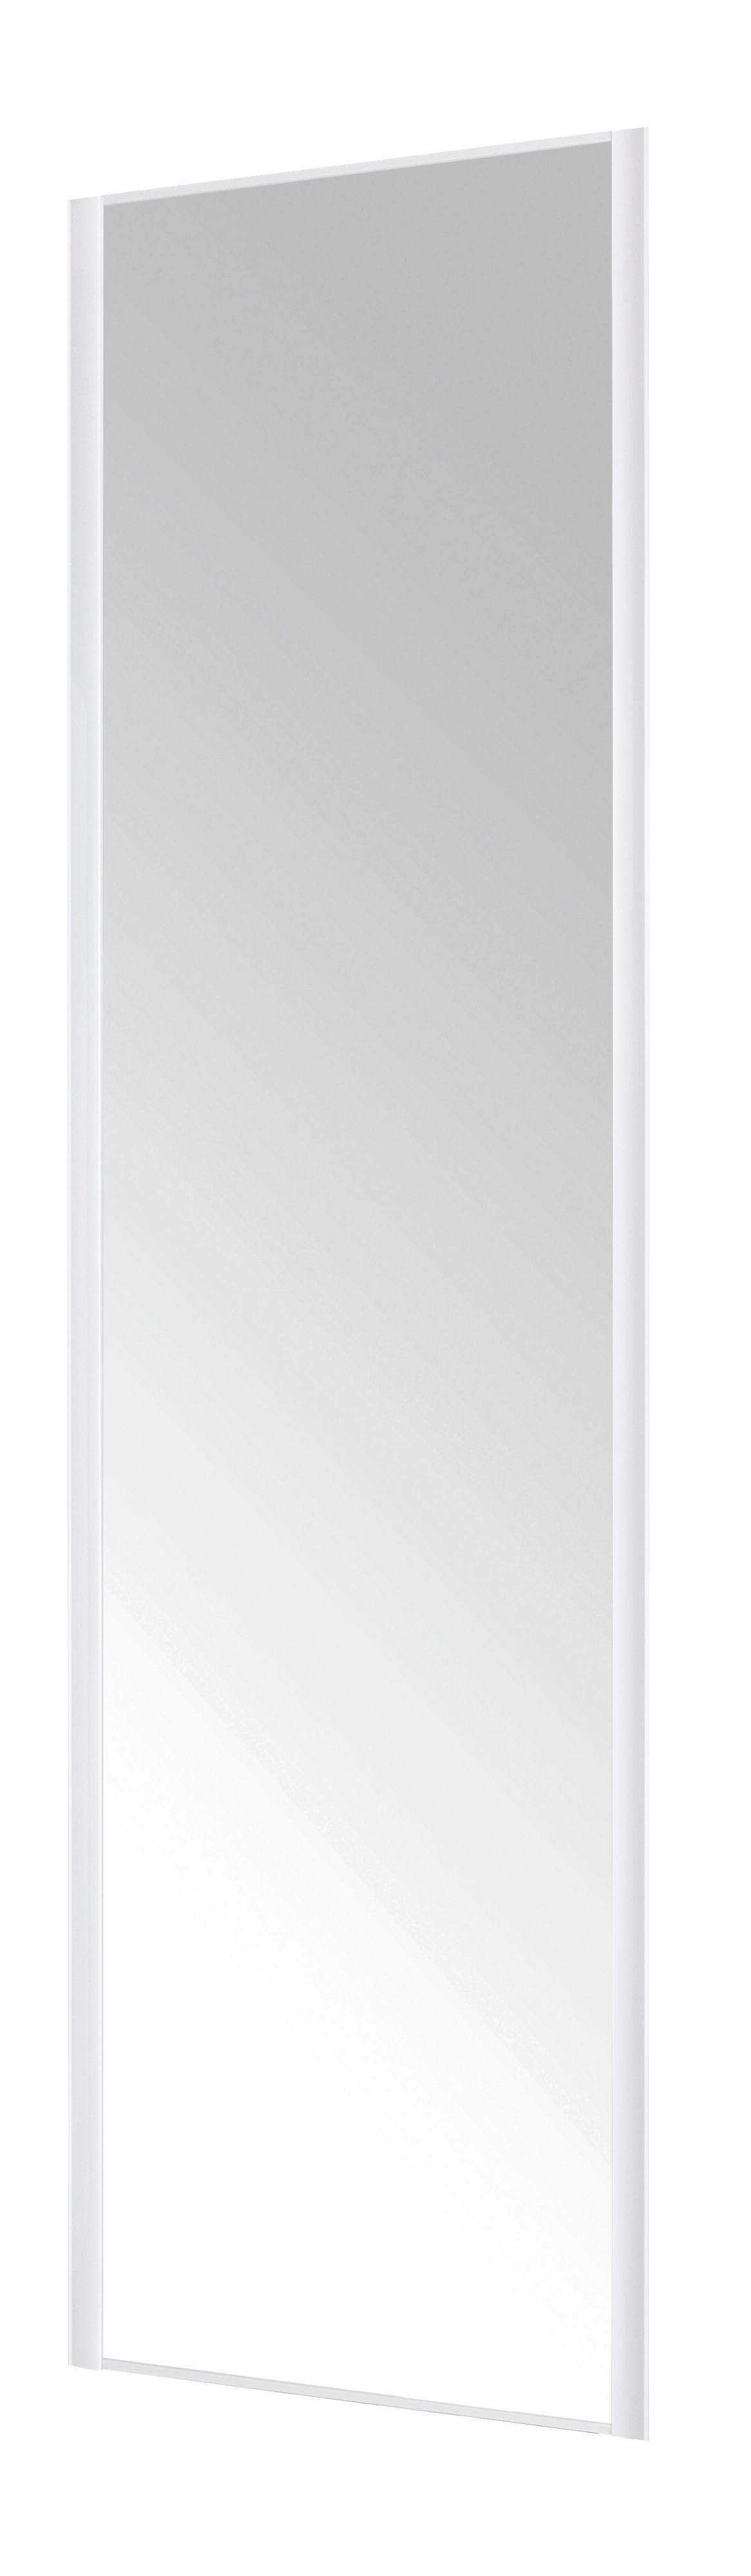 Form Valla White Mirrored Sliding wardrobe door (H) 2260mm x (W) 622mm